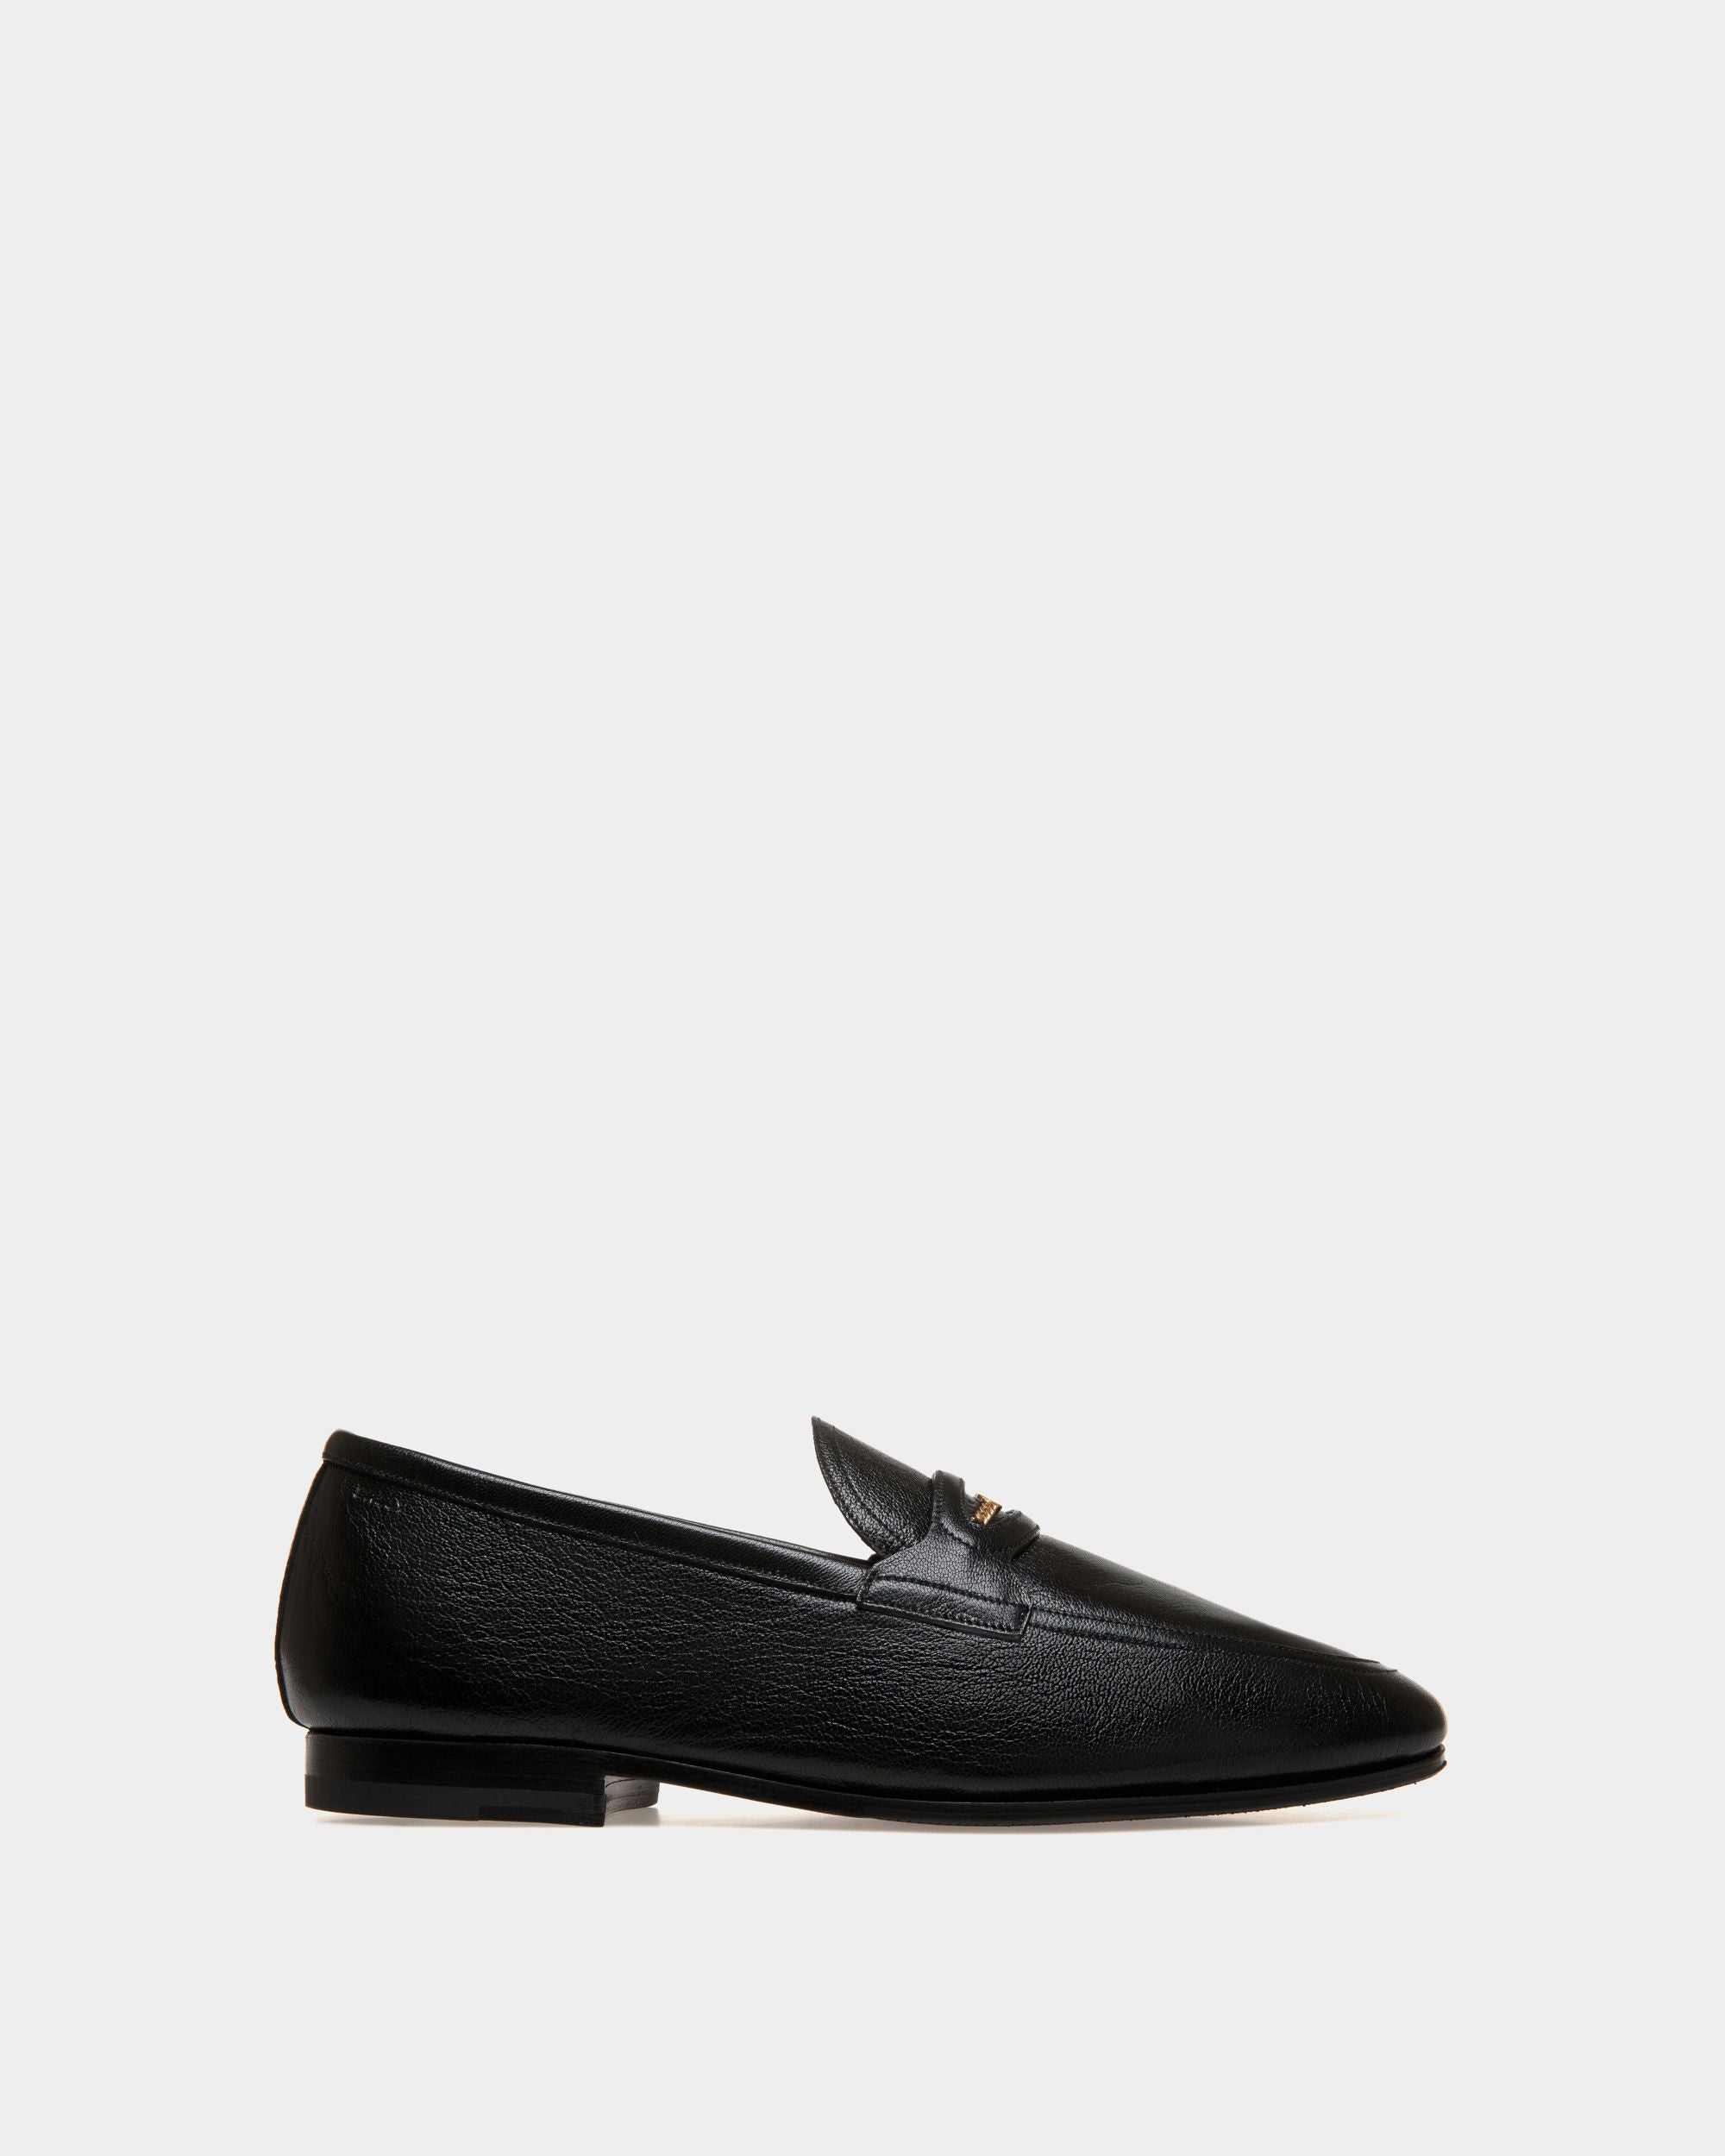 Plume | Loafers für Herren aus genarbtem Leder in Schwarz | Bally | Still Life Seite